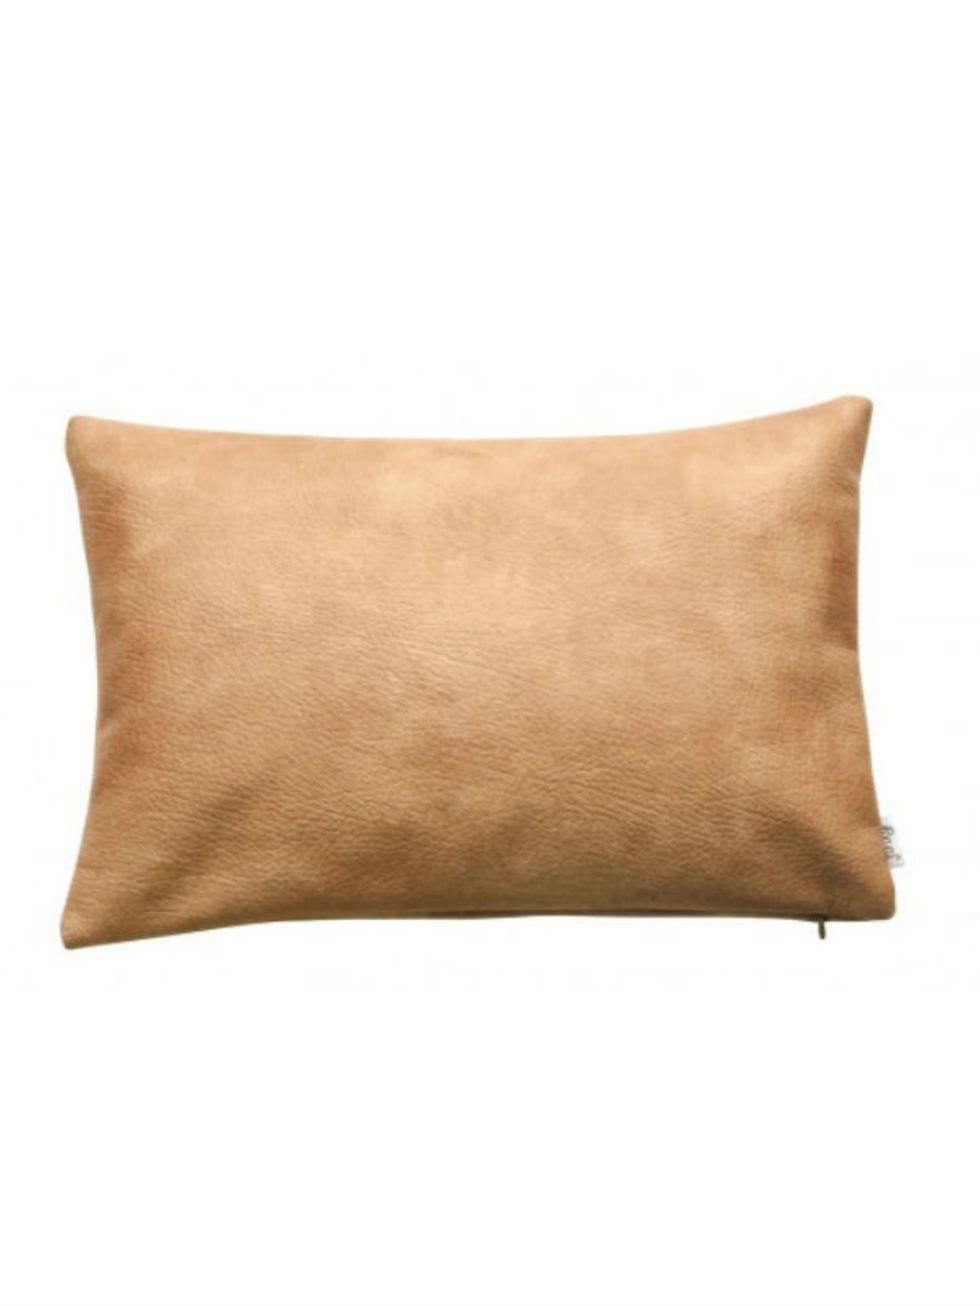 Brown, Textile, Pillow, Cushion, Throw pillow, Tan, Khaki, Linens, Home accessories, Beige, 